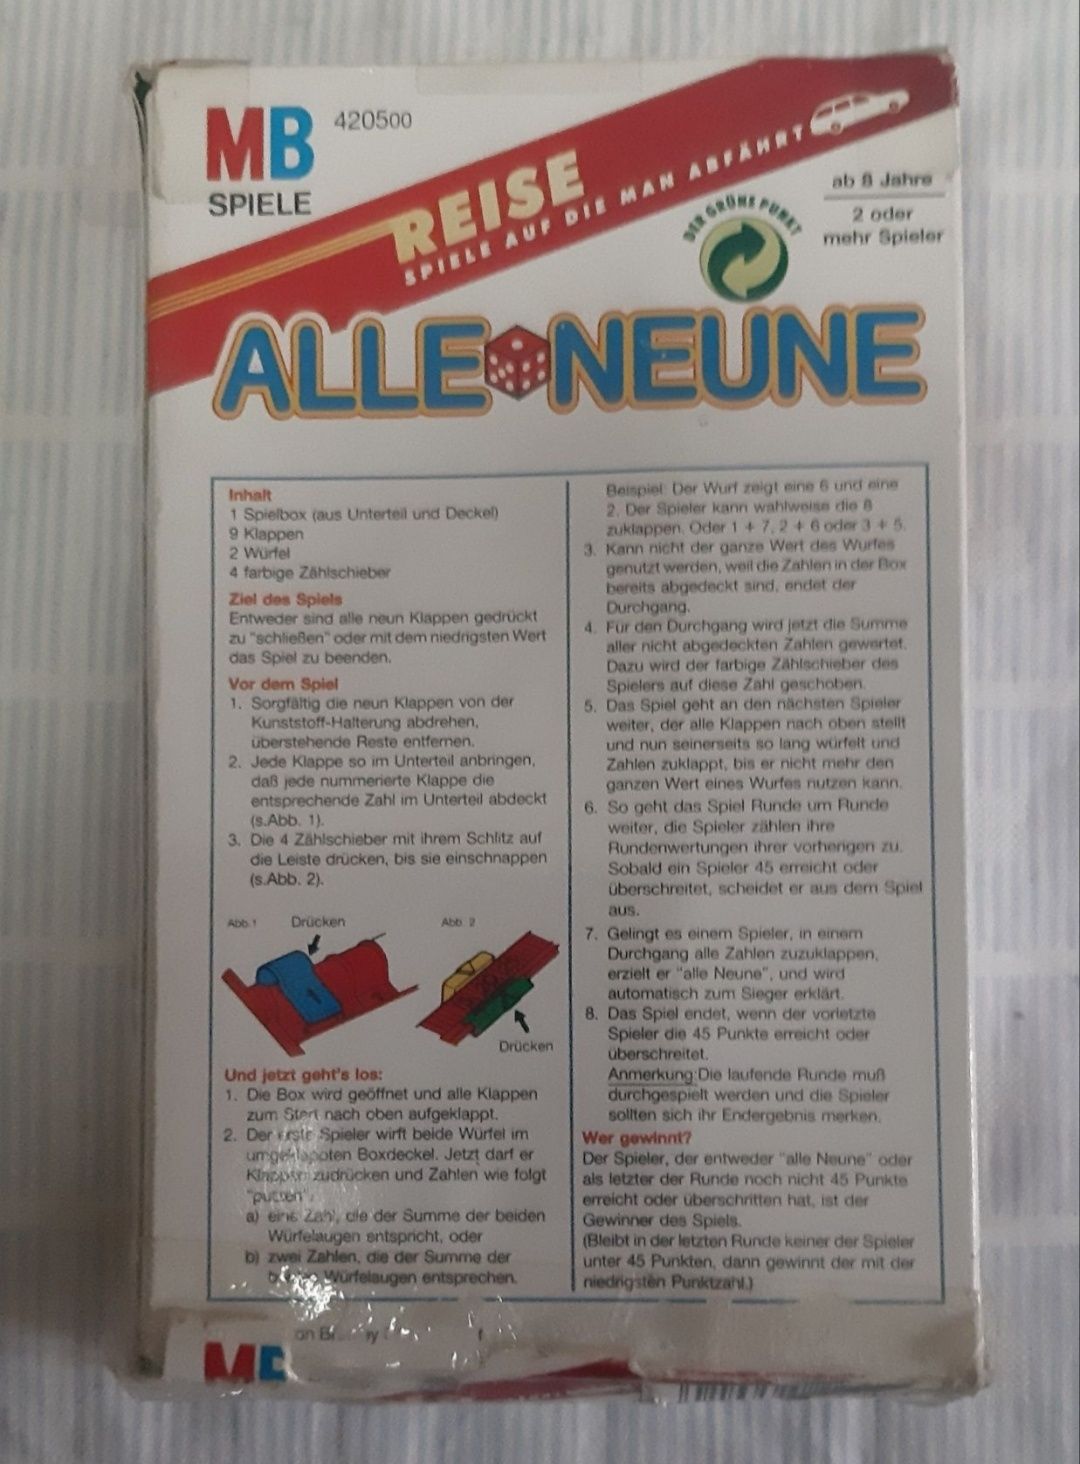 MB Spiele - Alle Neune (Joc vintage)